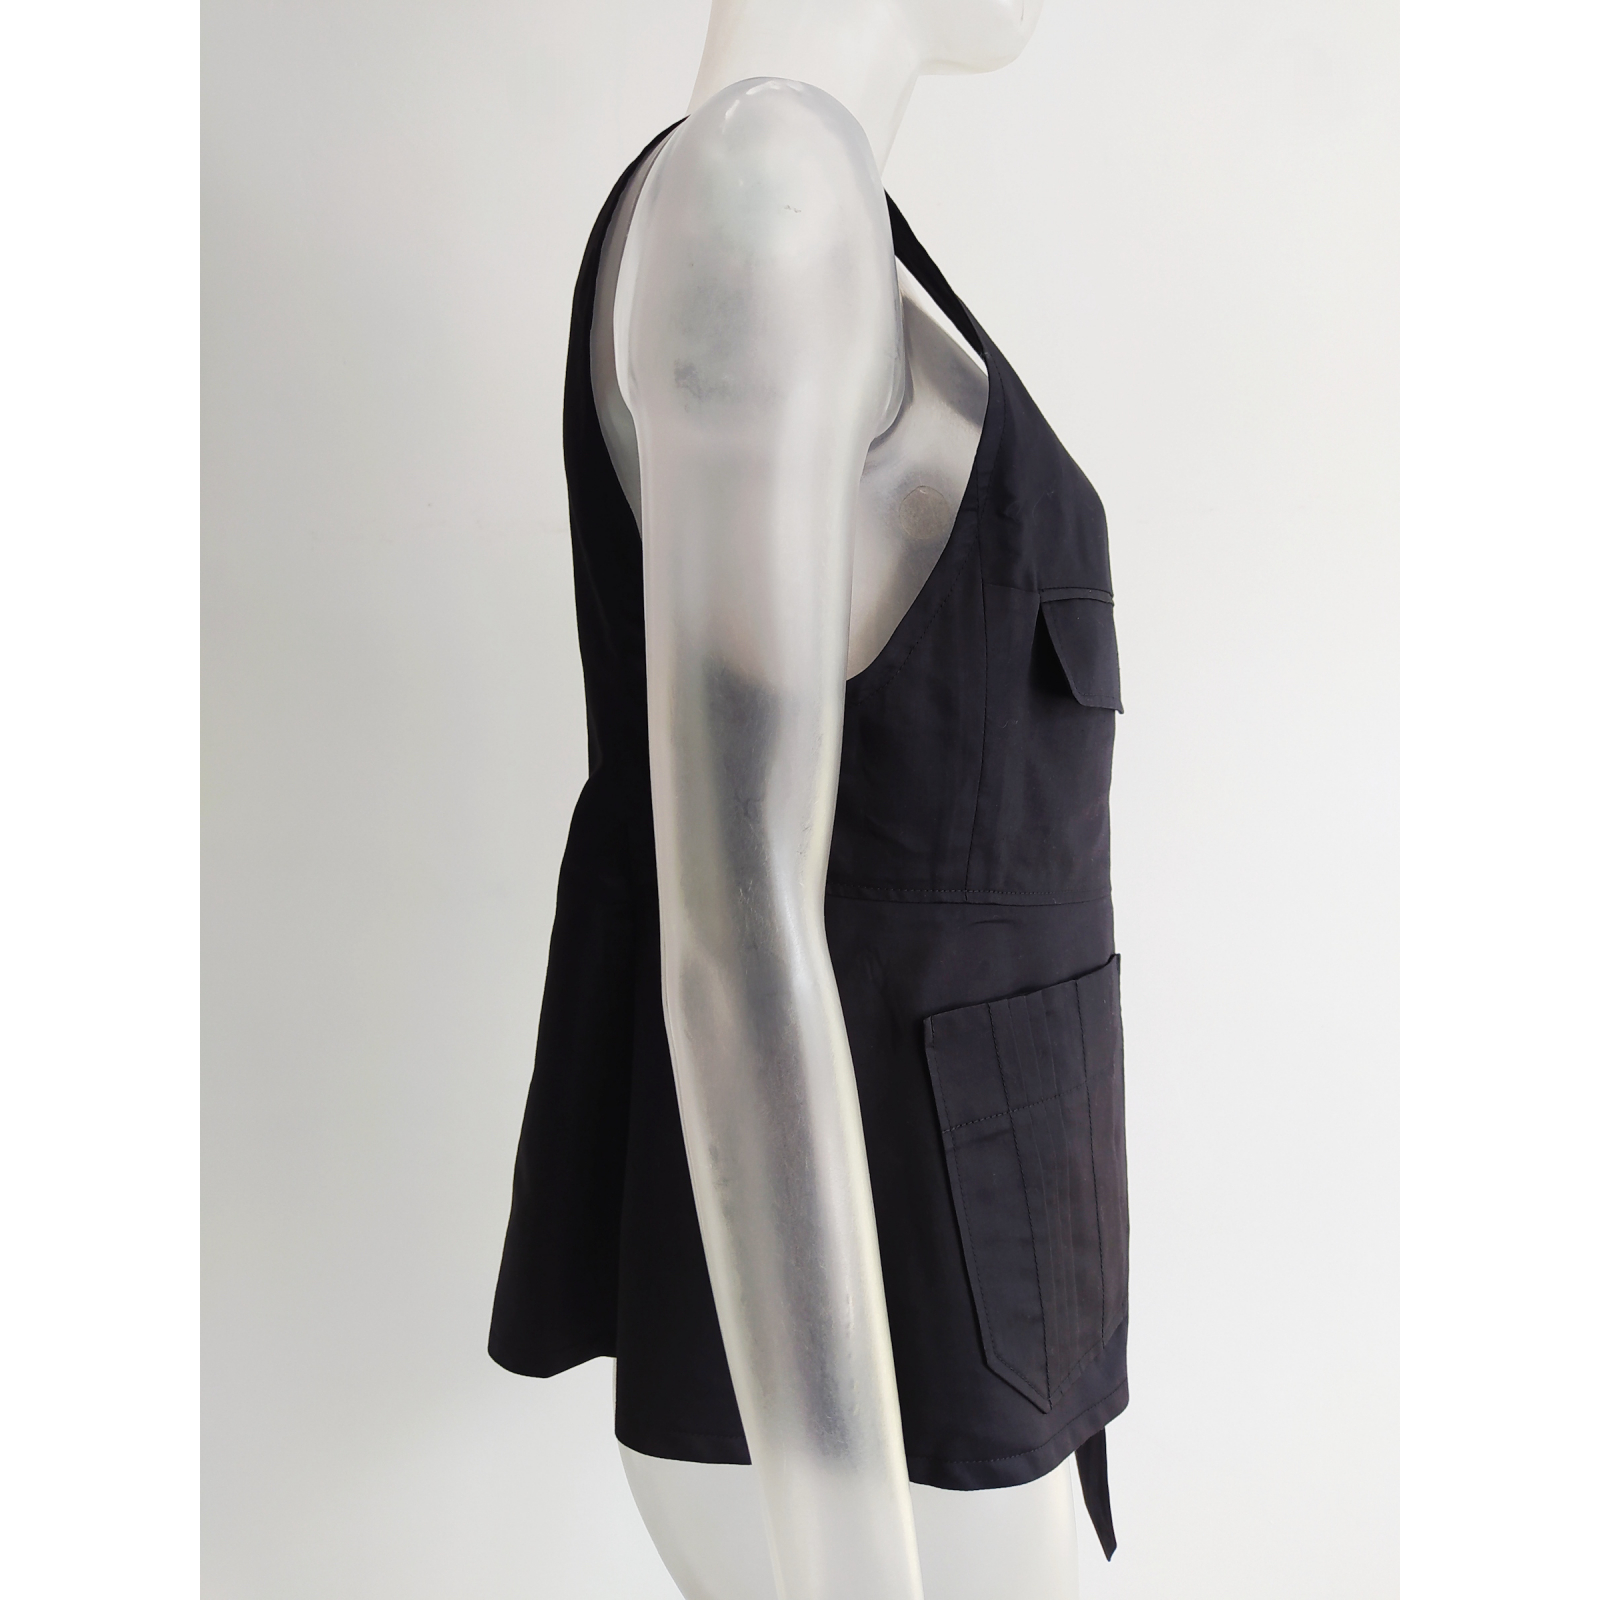 Nowa bluzka kamizelka bawełna oraz jedwab Yves Saint Laurent 40 42